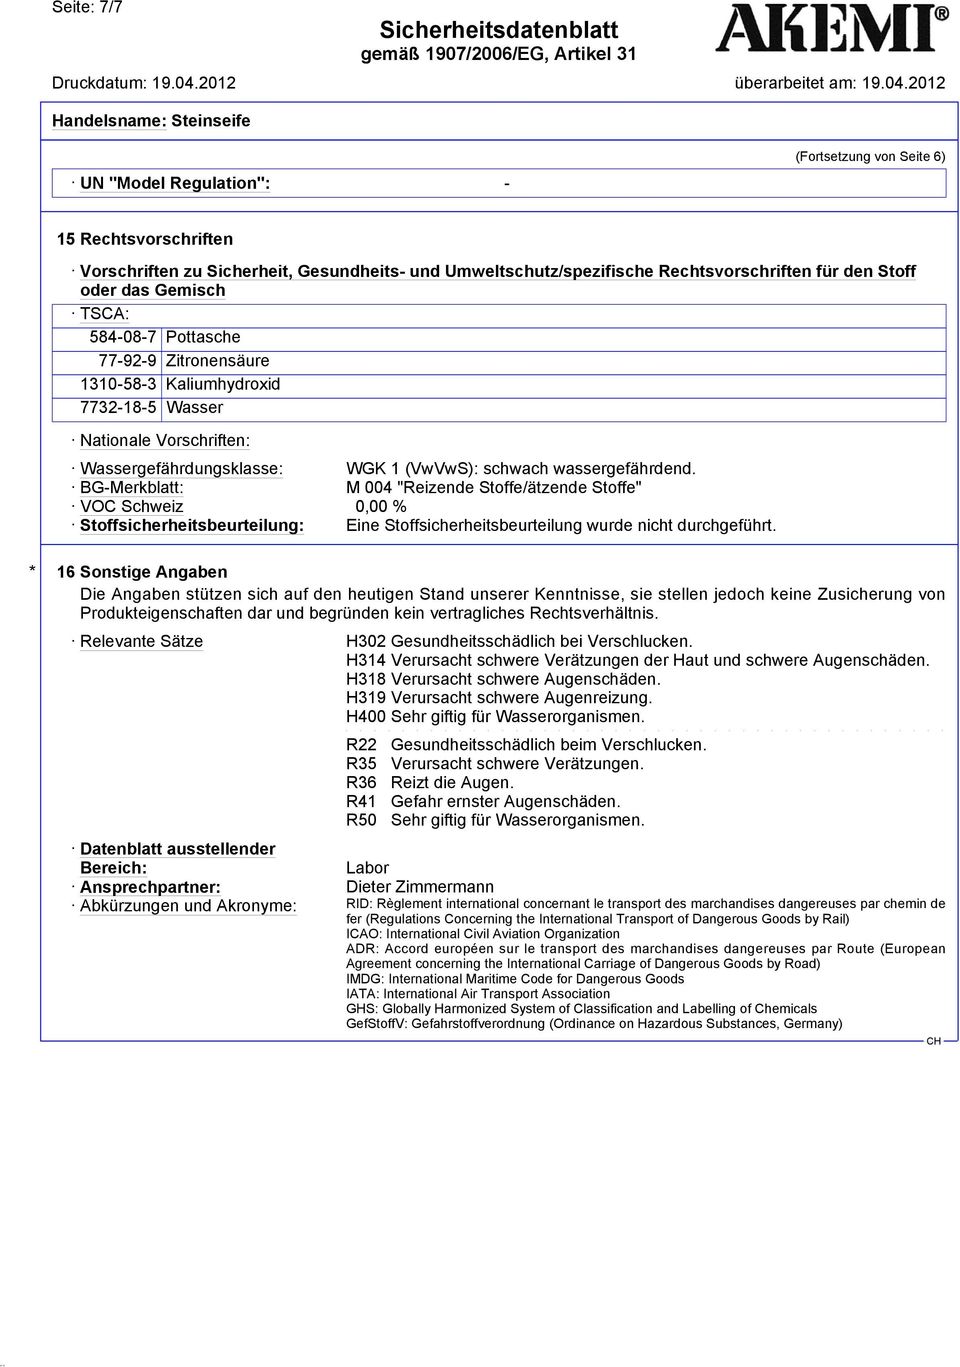 BG-Merkblatt: M 004 "Reizende Stoffe/ätzende Stoffe" VOC Schweiz 0,00 % Stoffsicherheitsbeurteilung: Eine Stoffsicherheitsbeurteilung wurde nicht durchgeführt.